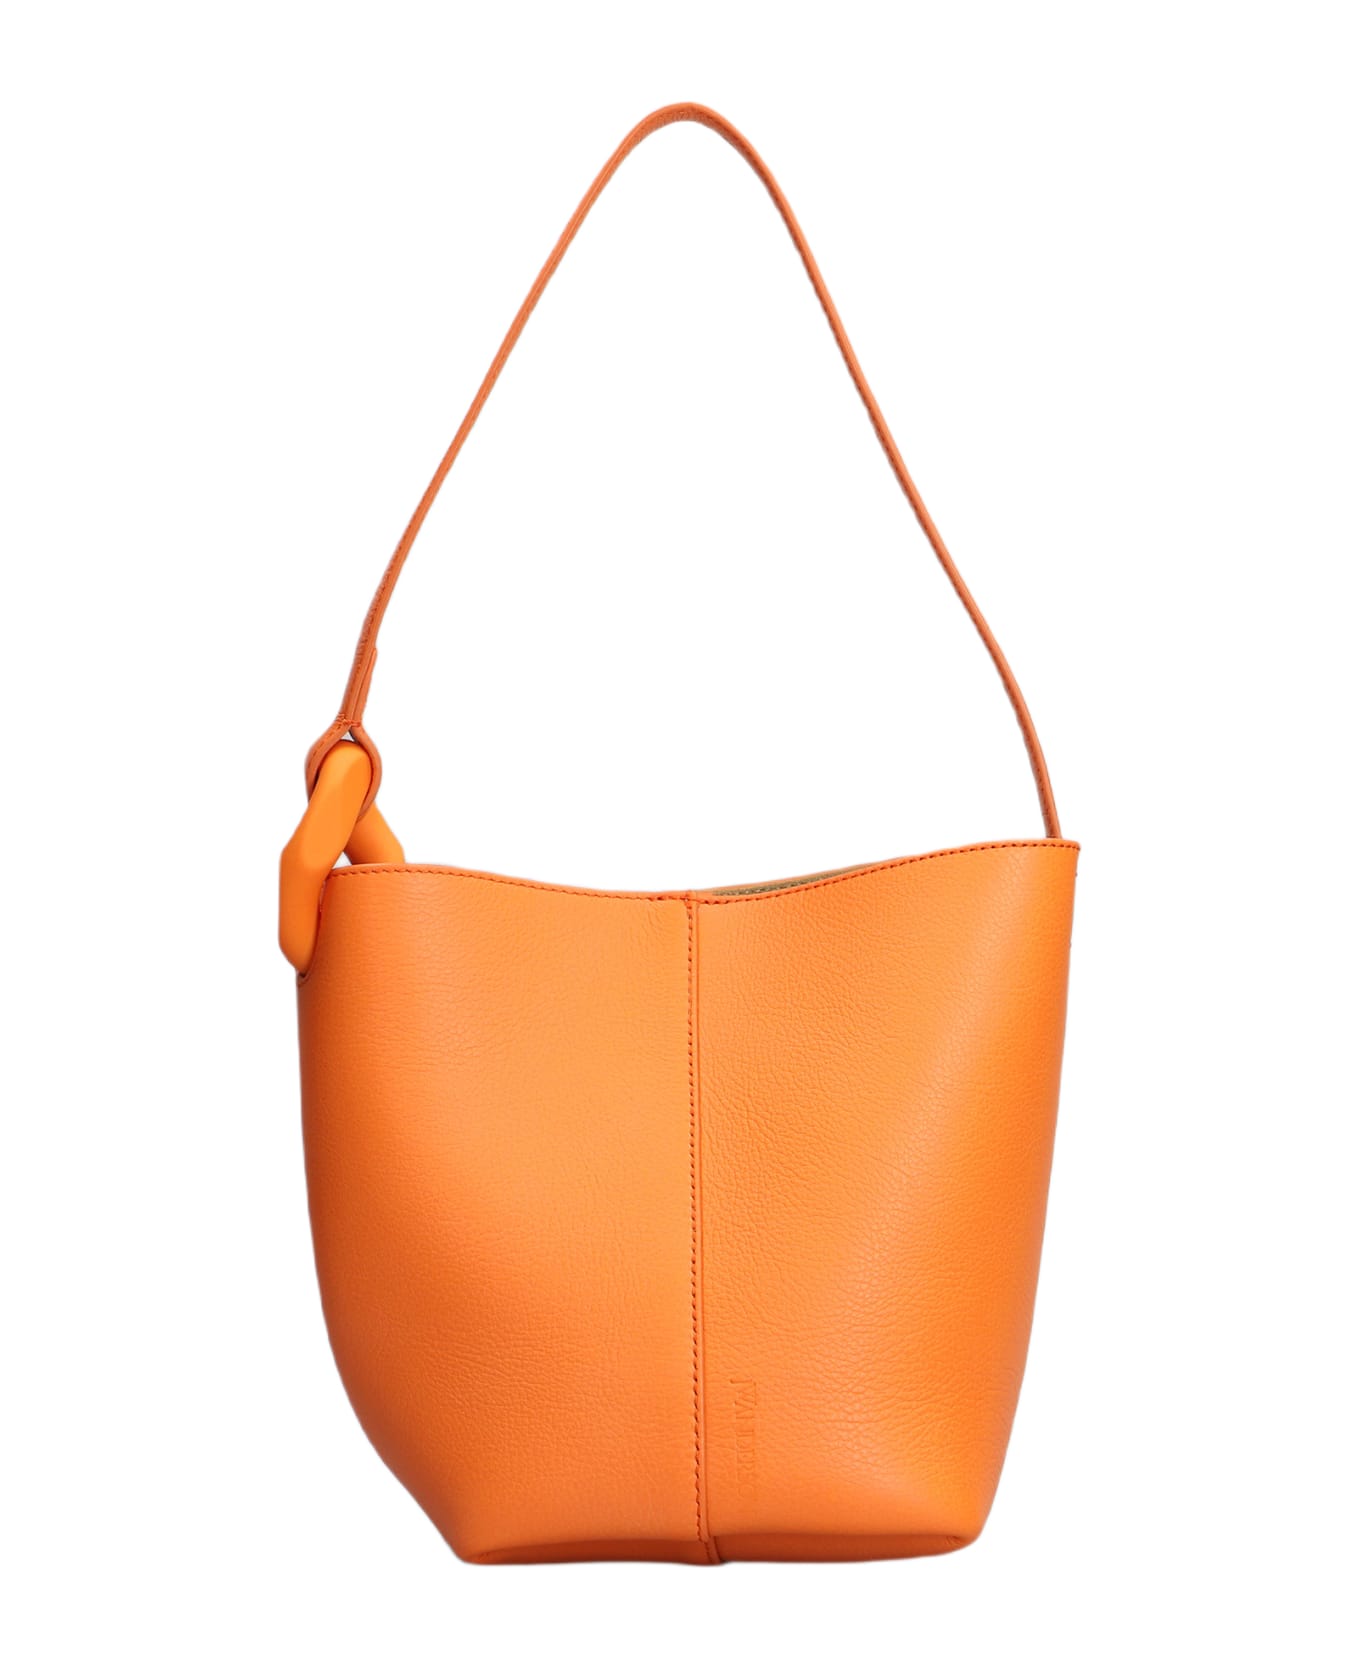 J.W. Anderson Corner Shoulder Bag In Orange Leather - ORANGE